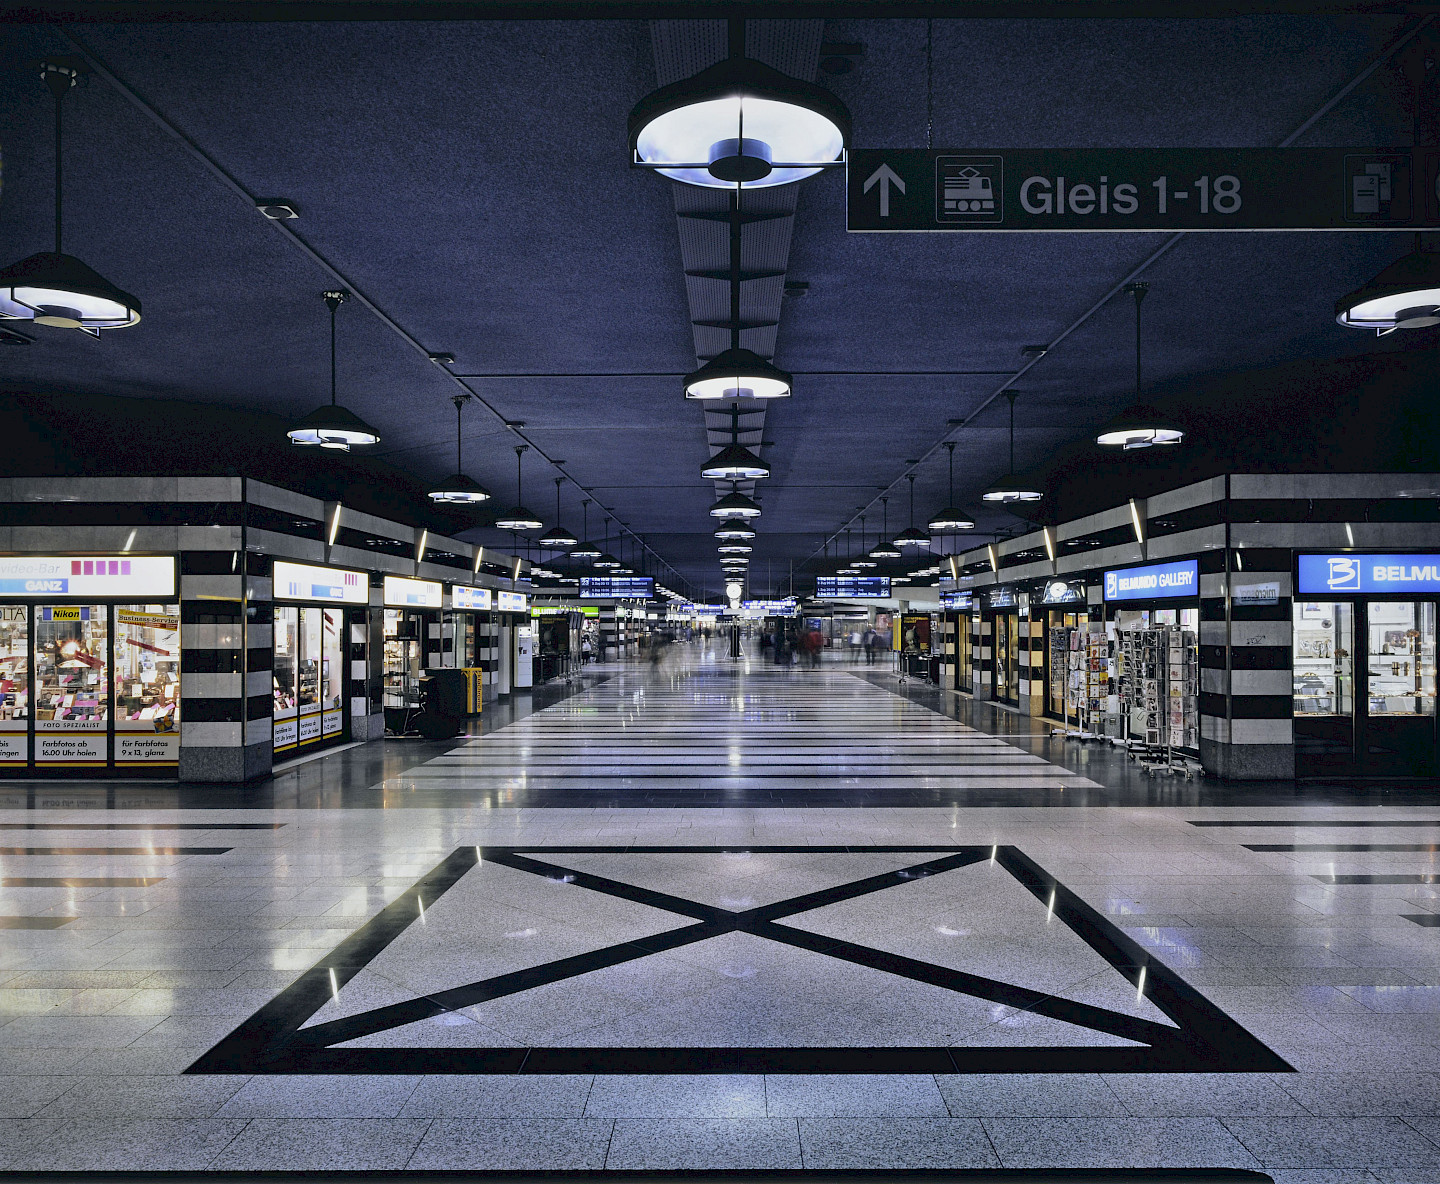 Der Bahnhof und die Stadt — Hauptbahnhof Zürich